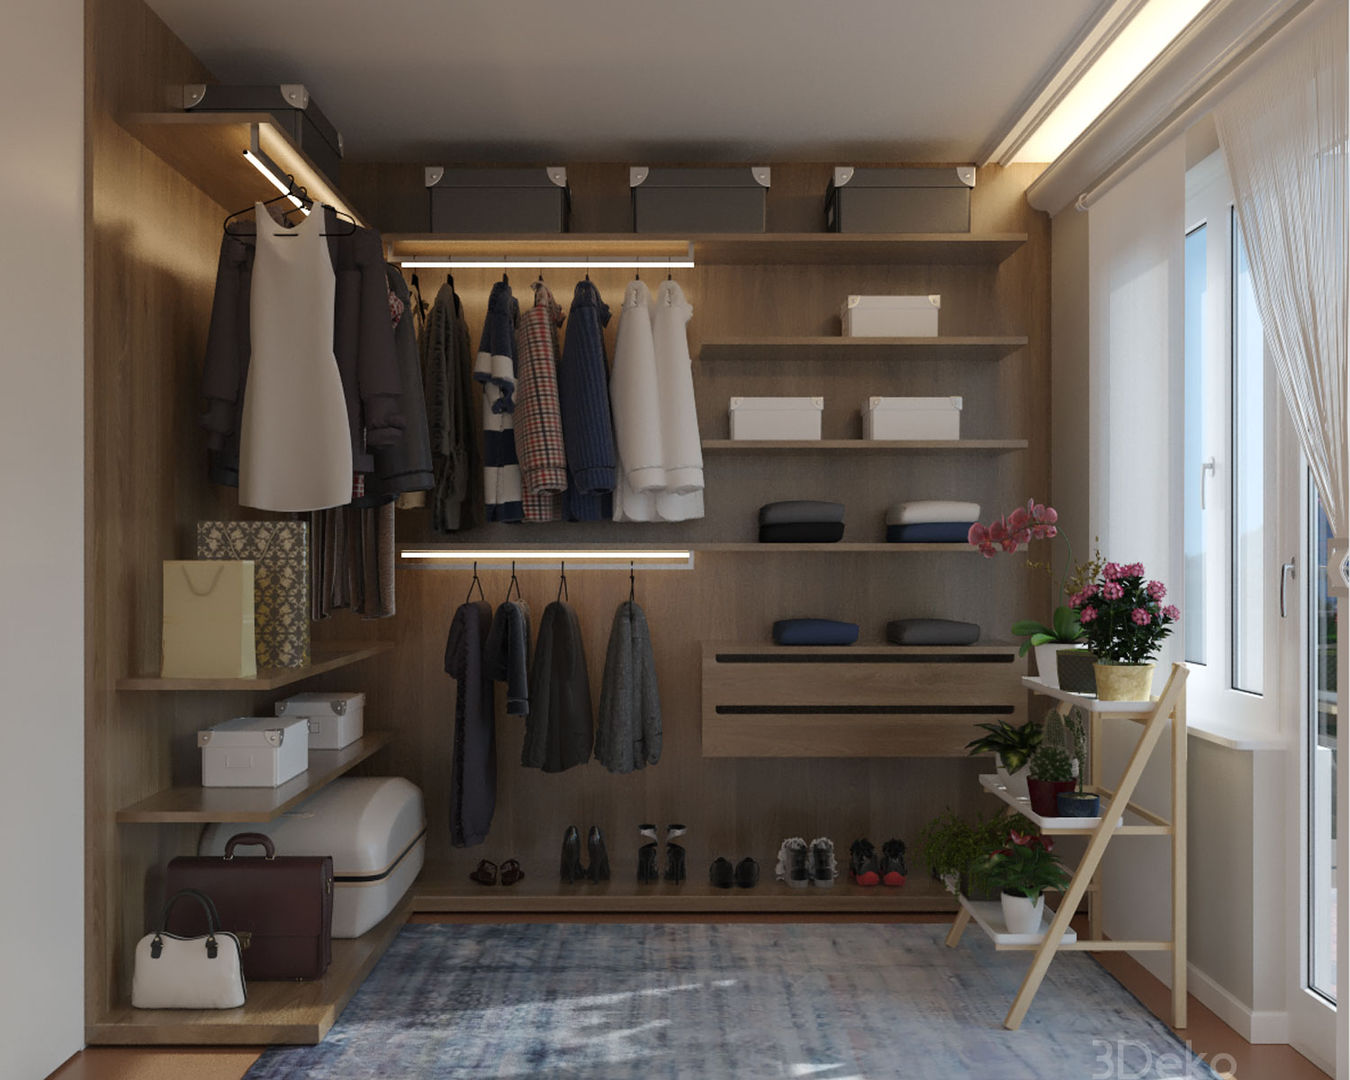 Vestidor en 3D homify Dormitorios modernos: Ideas, imágenes y decoración